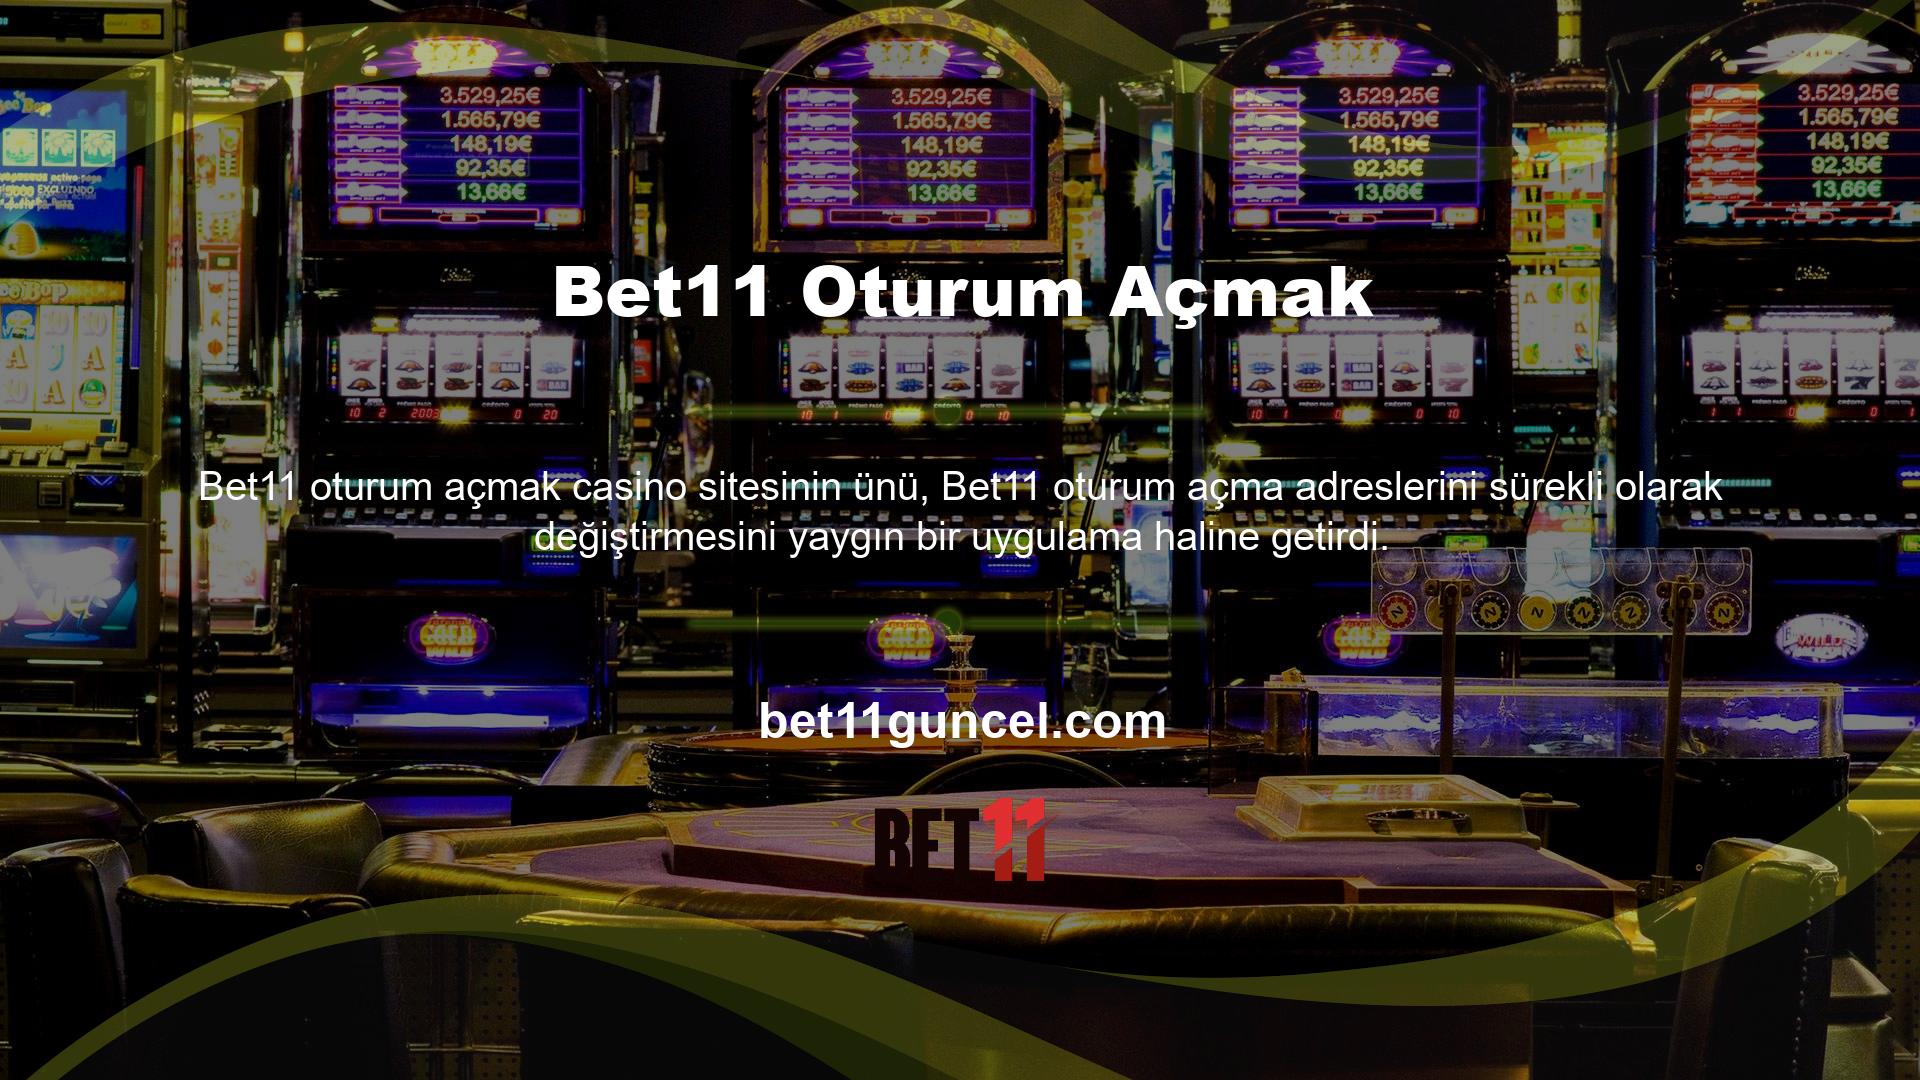 Bet11 bir casino sitesidir ancak bu platformun en büyük avantajı, diğer birçok bahis sitesine göre daha yüksek maç oranına sahip canlı bahis ve spor bahisleri hizmetidir